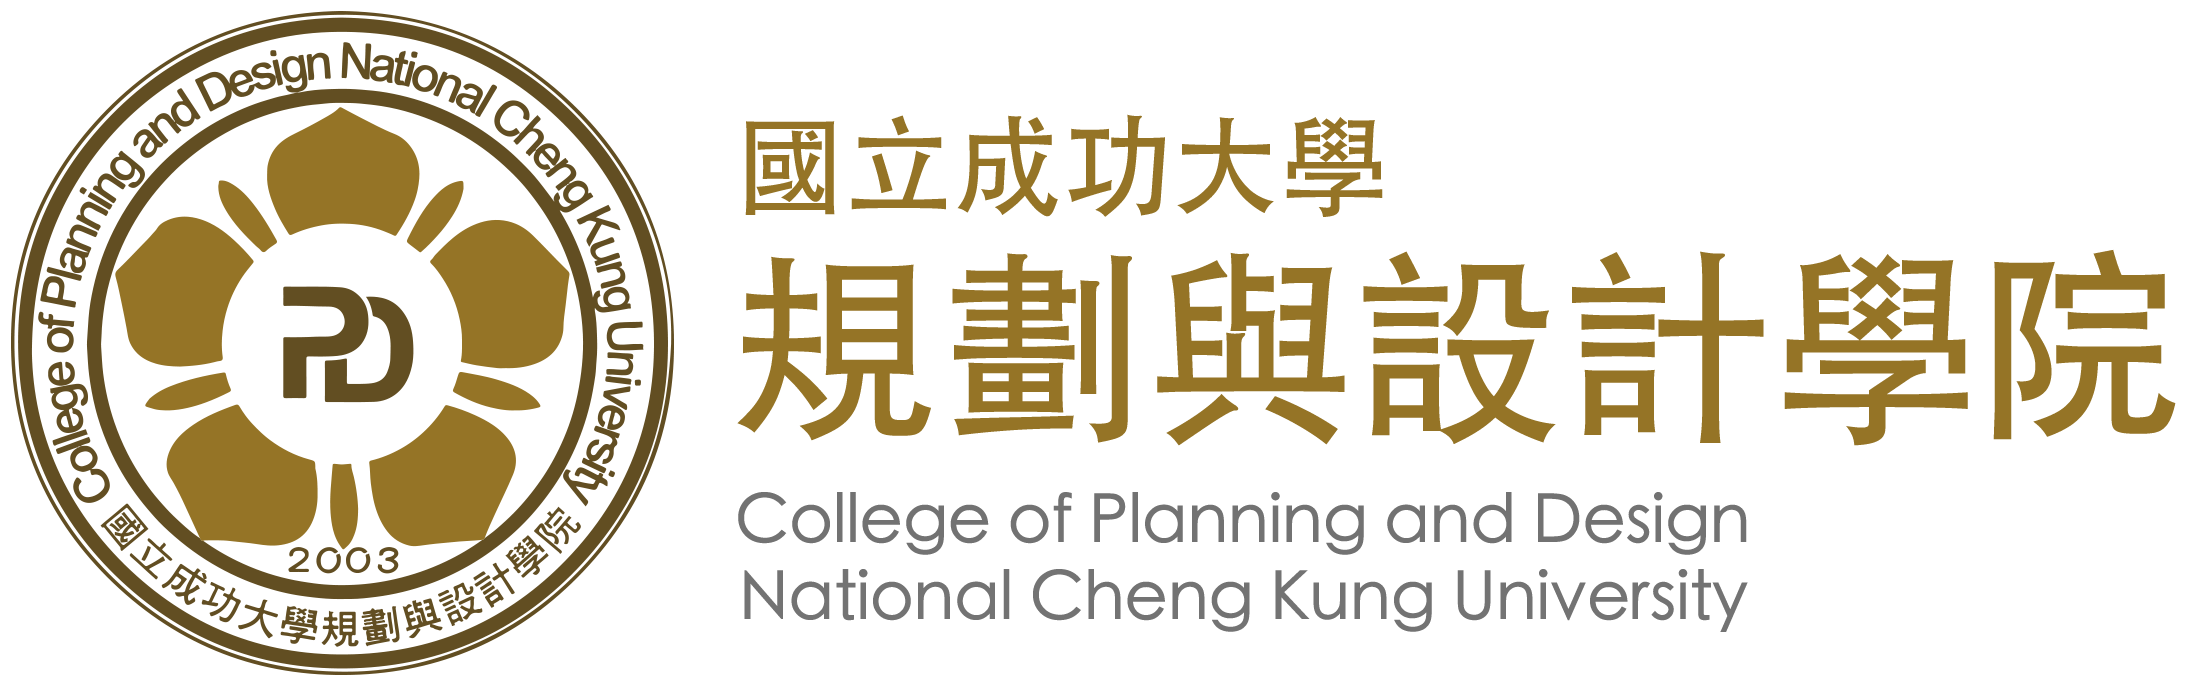 NCKU, 成功大學-規劃與設計學院